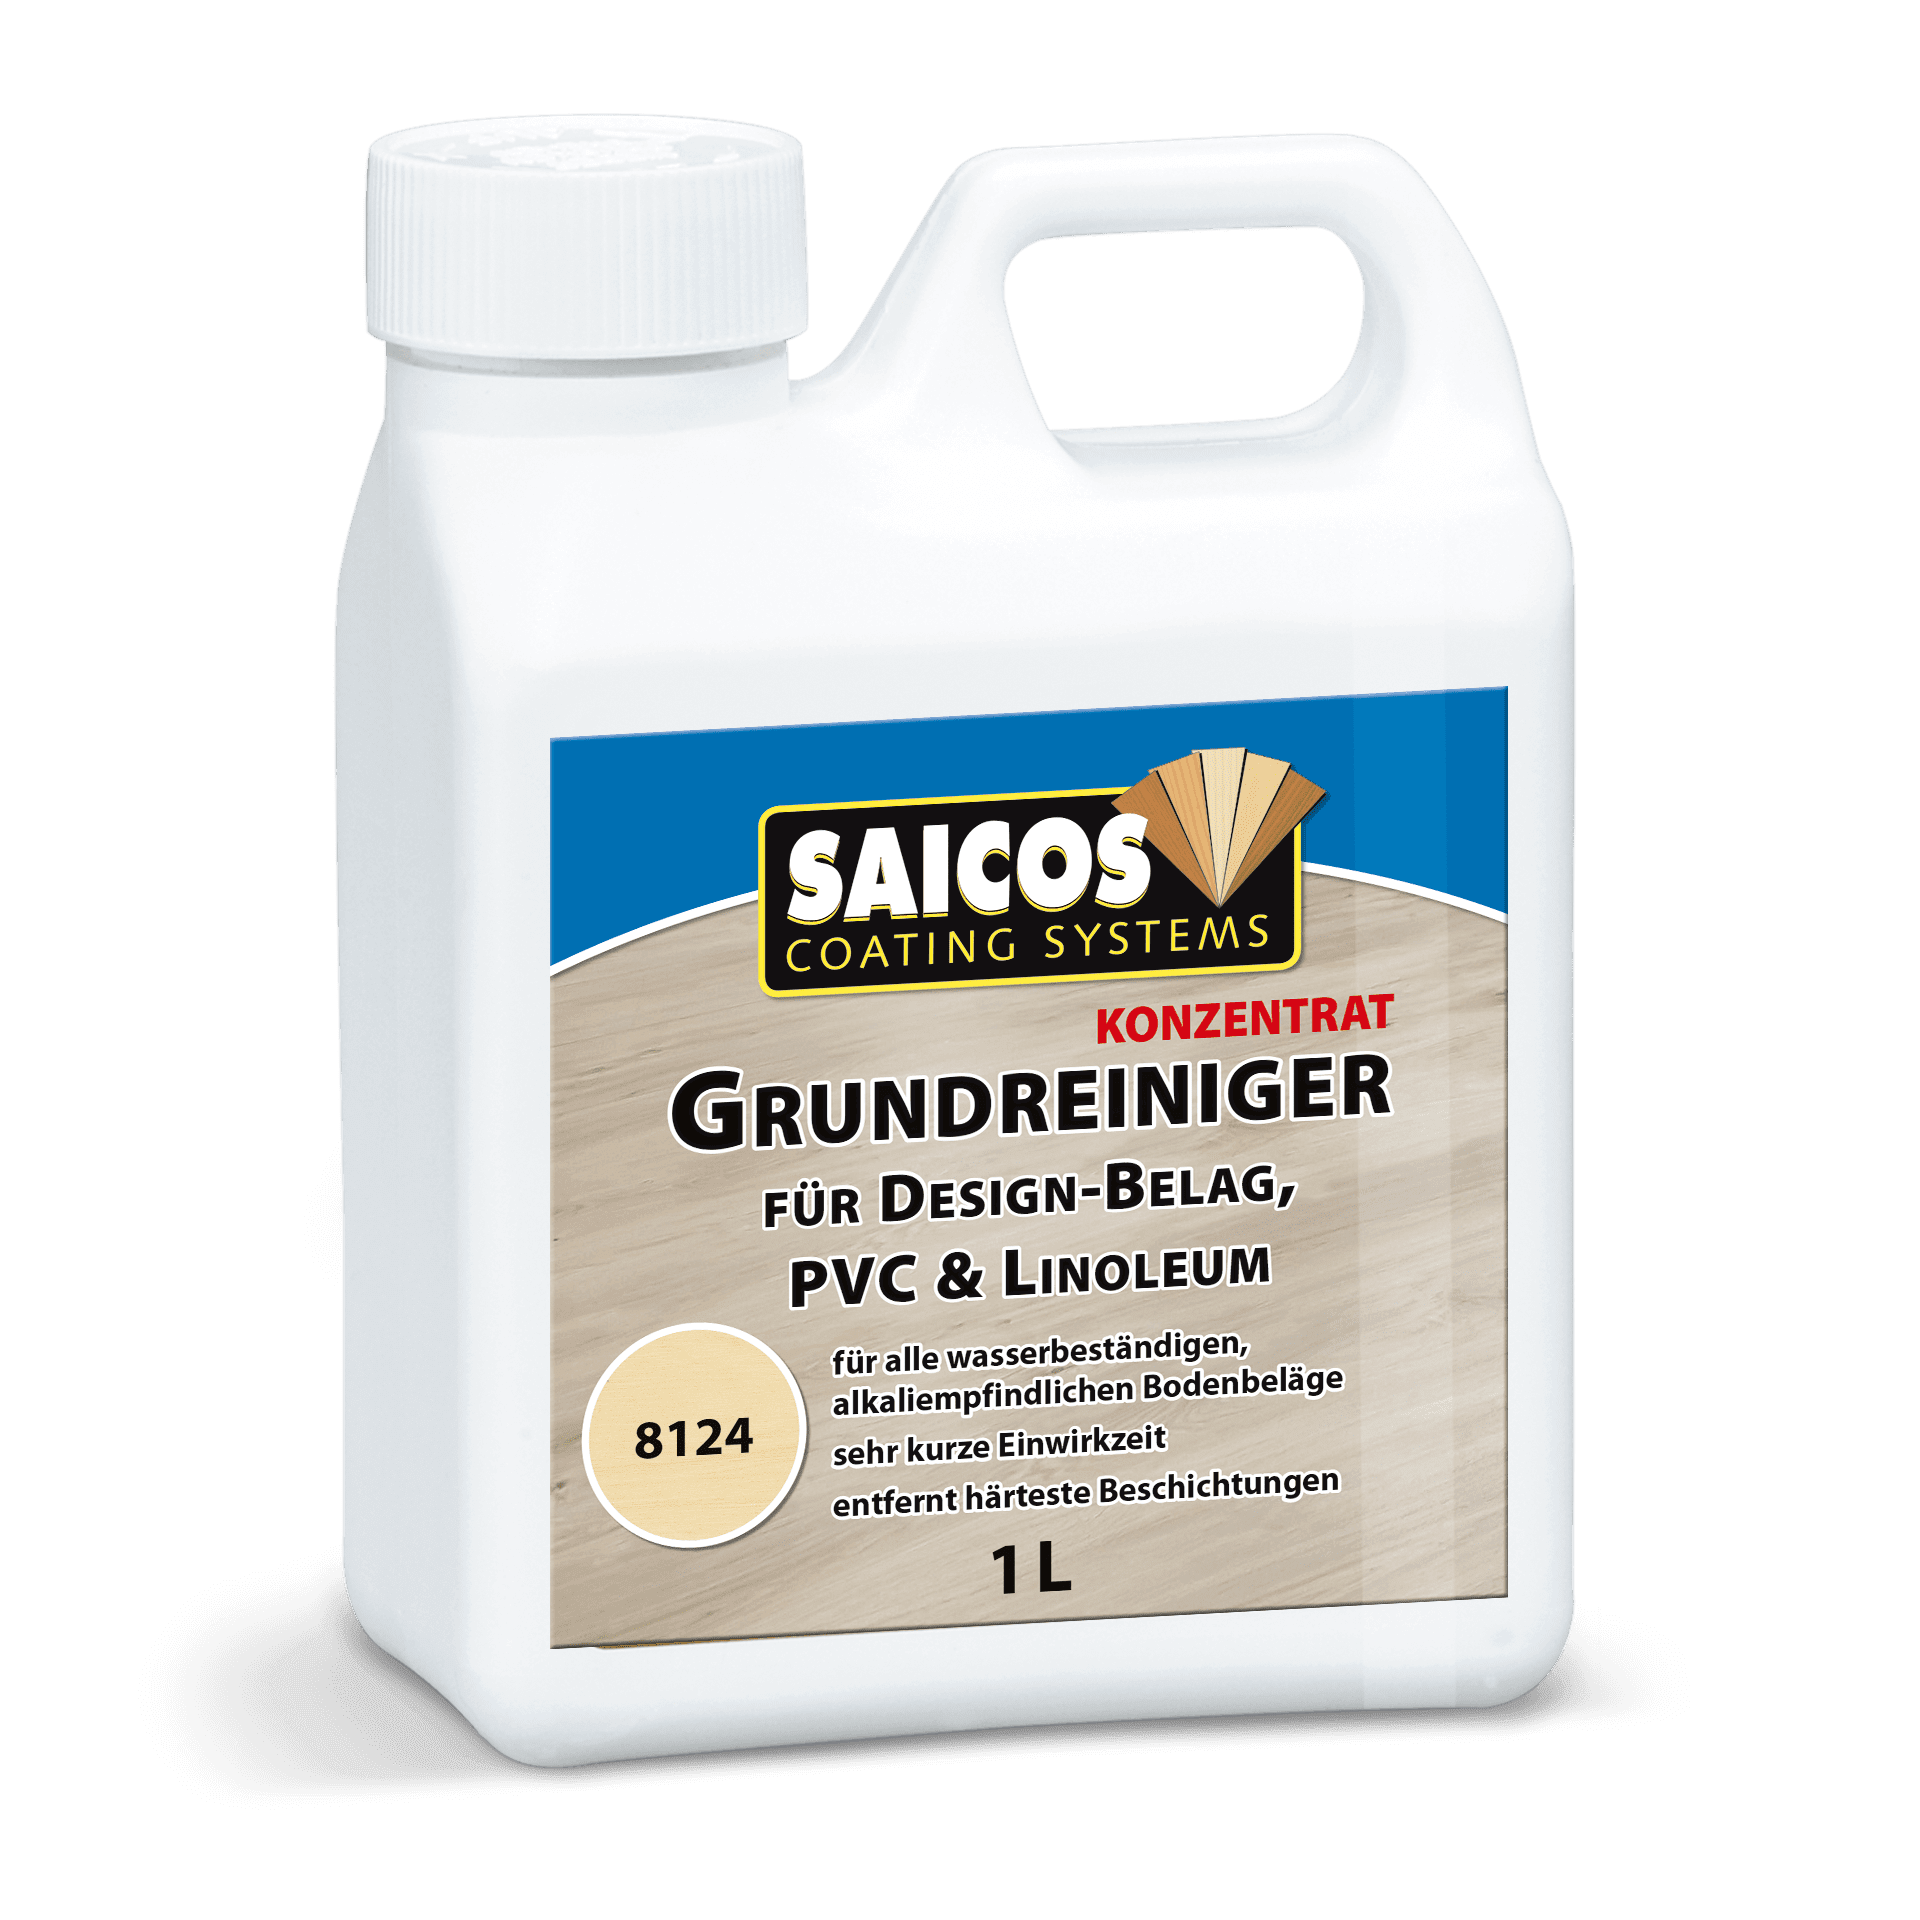 SAICOS basic cleaner (8124)